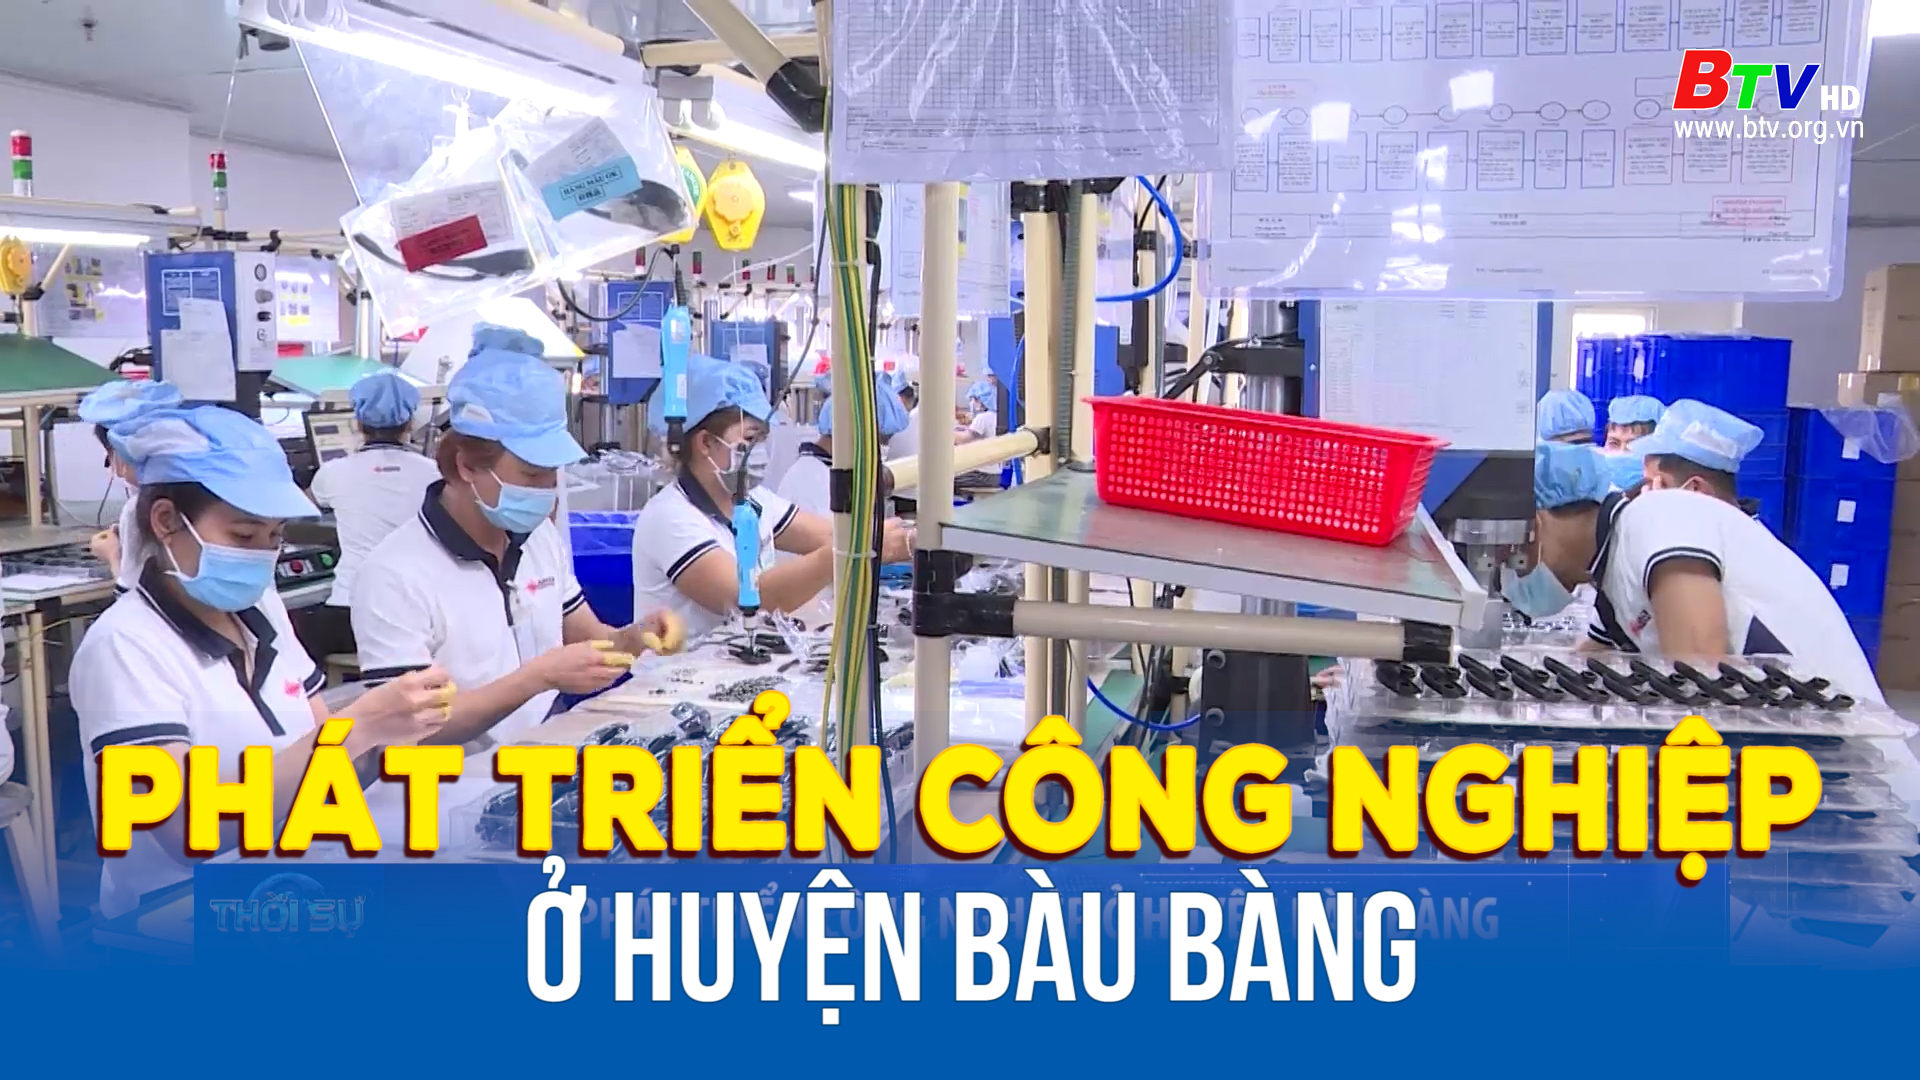 Phát triển công nghiệp ở huyện Bàu Bàng